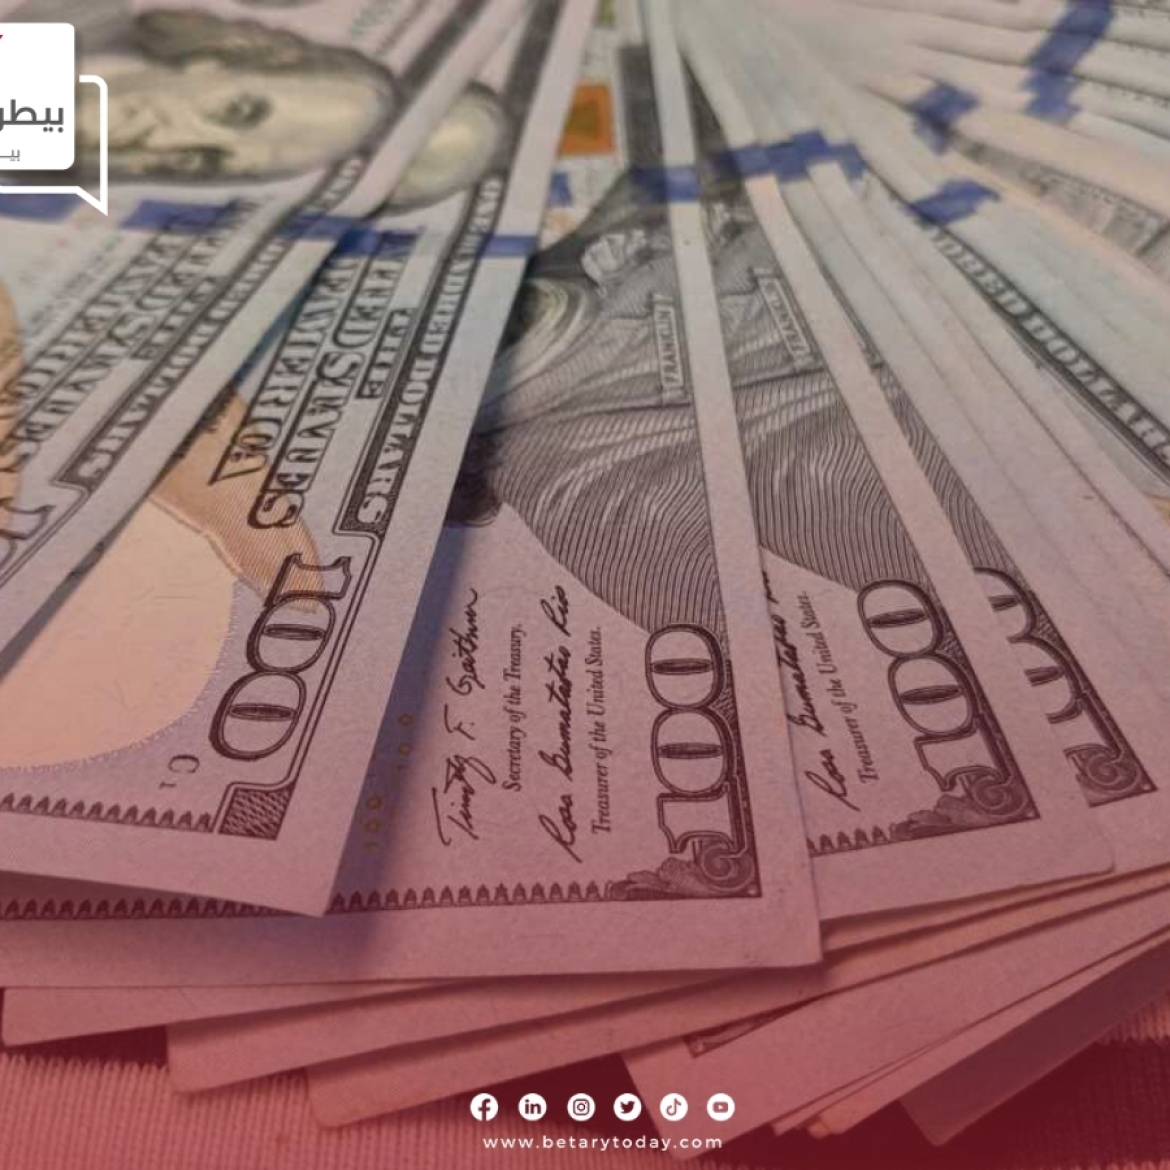 تراجع أسعار الدولار الأمريكي اليوم الثلاثاء 23 أبريل في البنوك المصرية الحكومية والخاصة